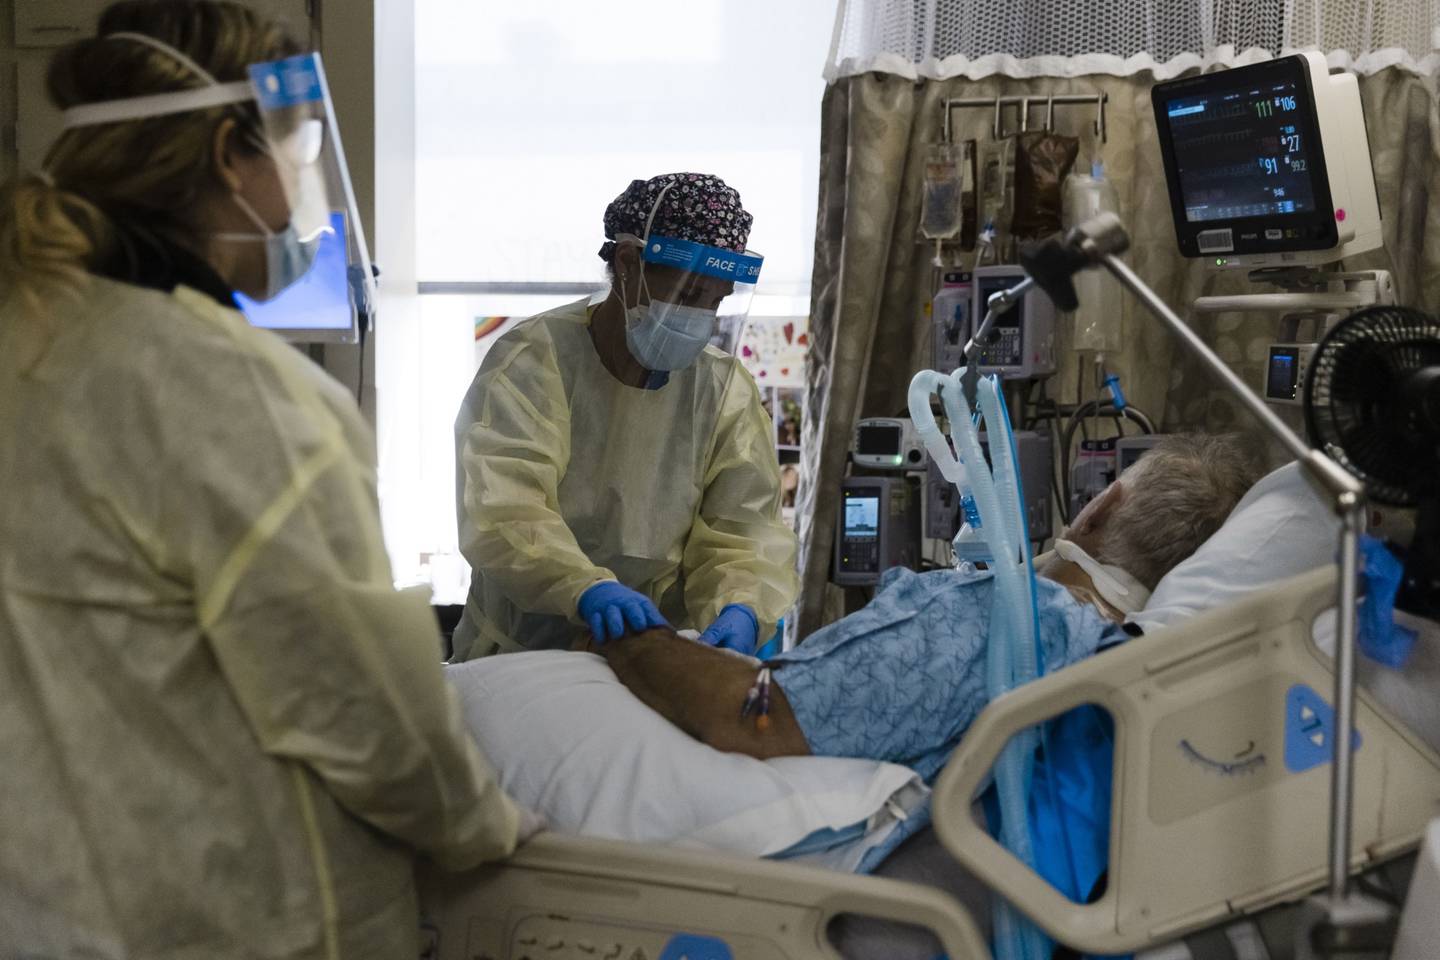 Un trabajador de salud trata a un paciente dentro de una sala de presión negativa en la unidad de cuidados intensivos (UCI) de Covid-19 en el Freeman Hospital West de Joplin, Missouri, Estados Unidos. Fotógrafo: Angus Mordant/Bloomberg